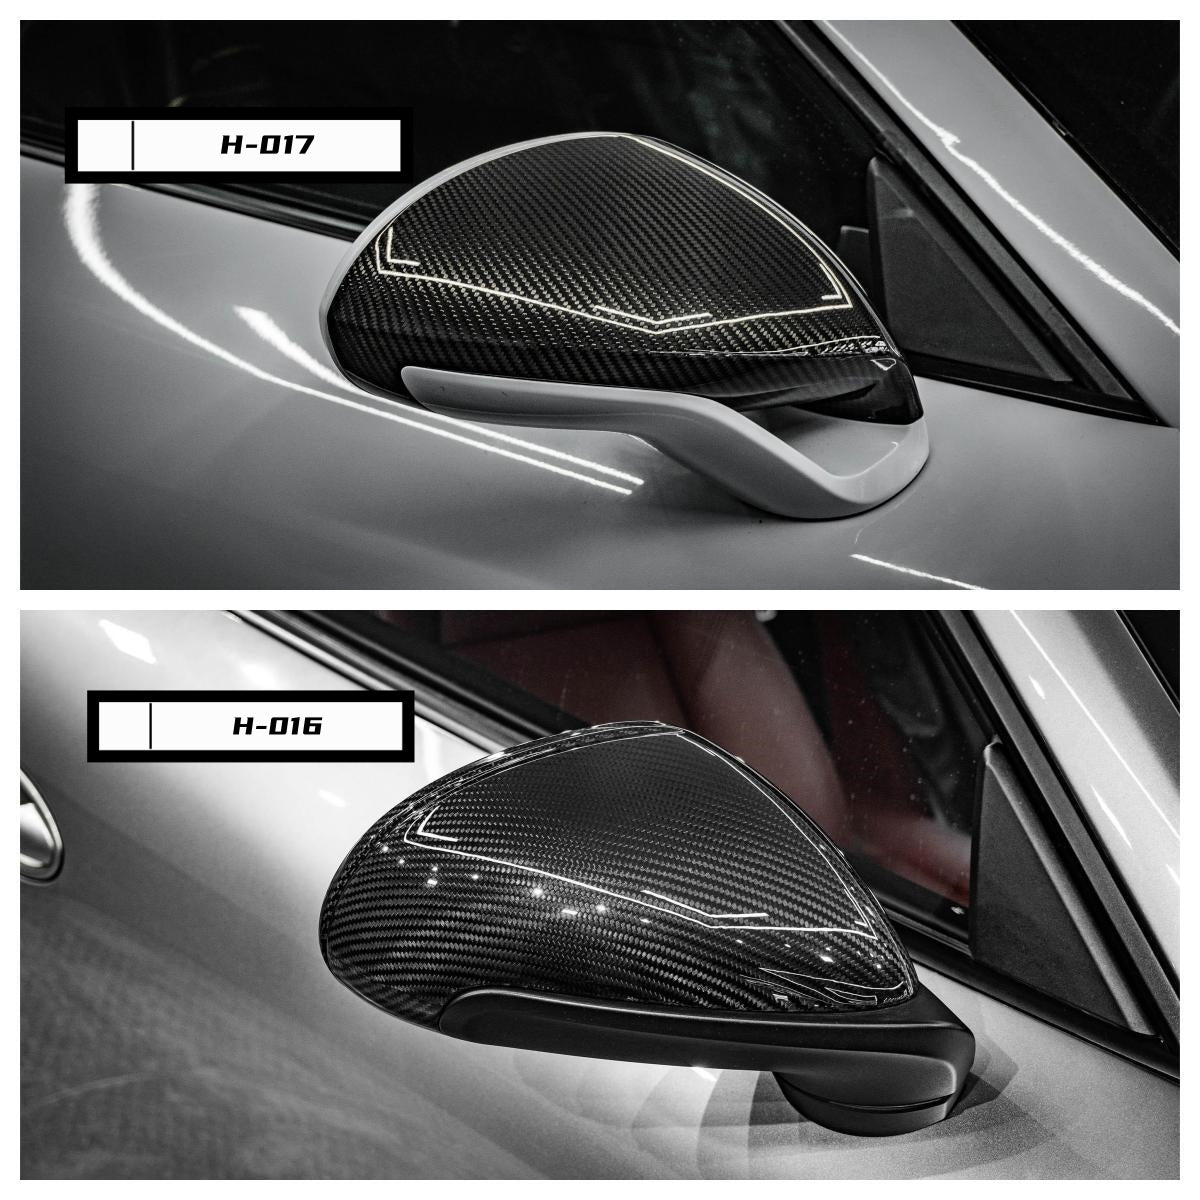 Aero Republic Carbon Fiber Mirror Cover Replacement for Porsche 911 991.1 991.2 Carrera / S / Turbo